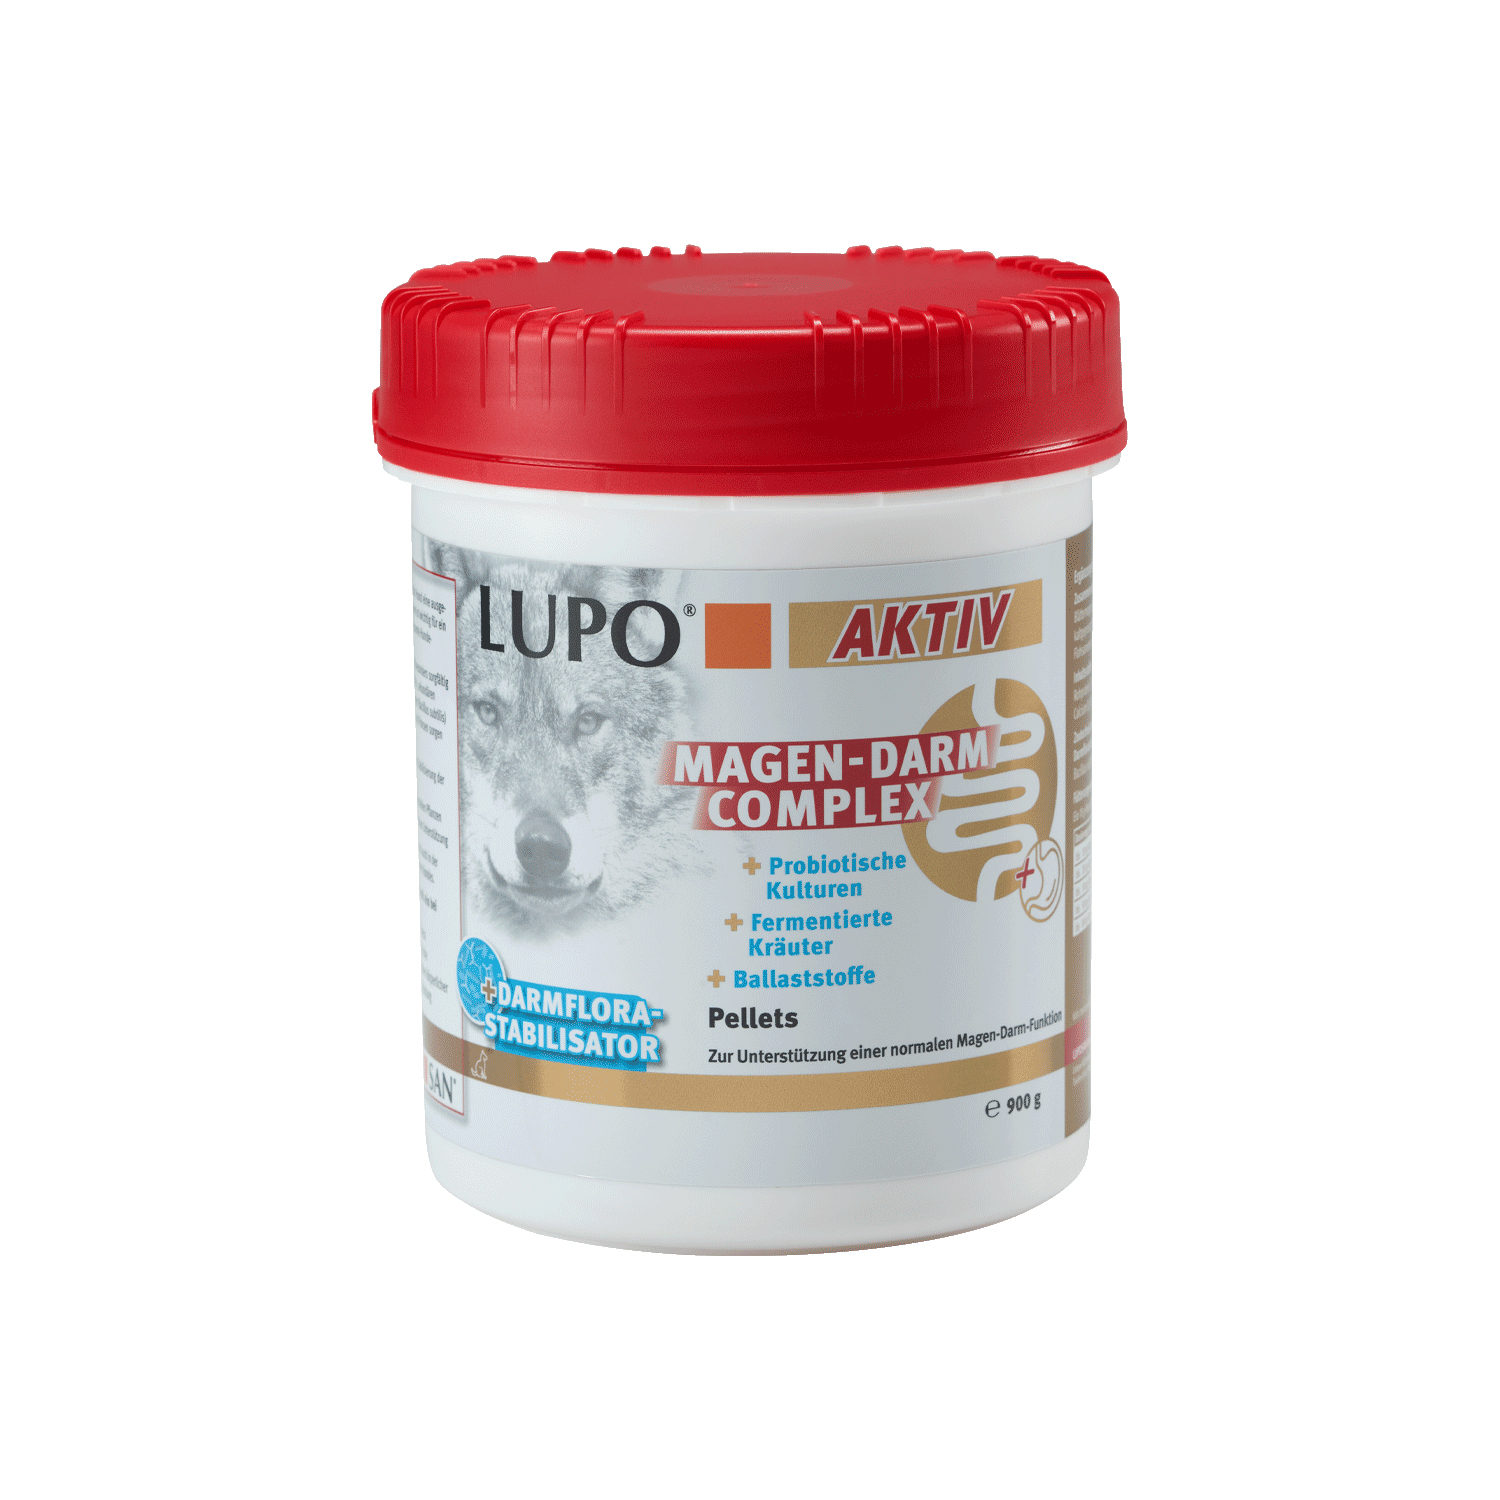 Lupo Aktiv Magen-Darm Complex - 900 g von Luposan